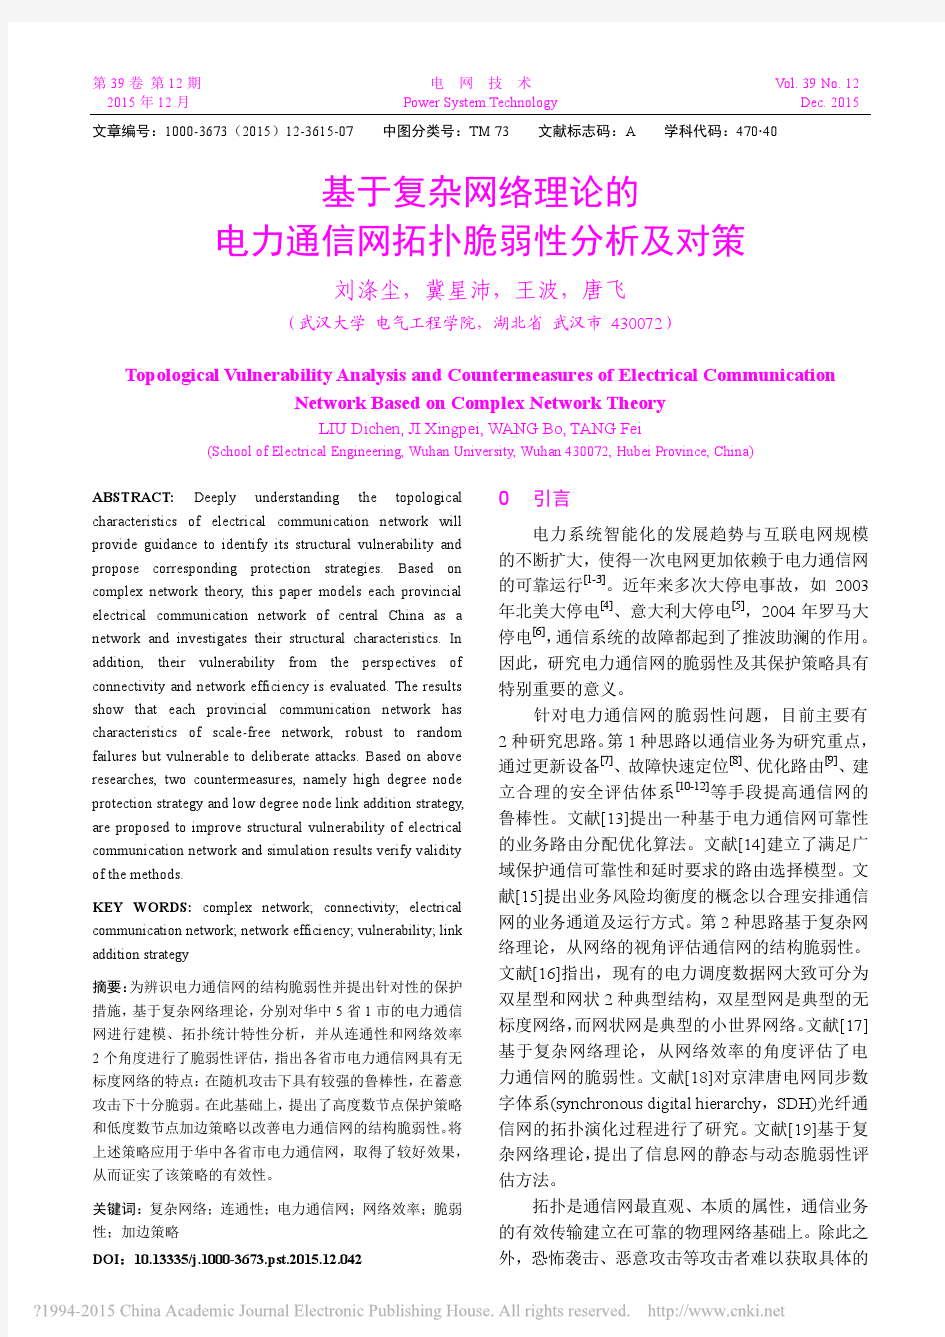 基于复杂网络理论的电力通信网拓扑脆弱性分析及对策_刘涤尘